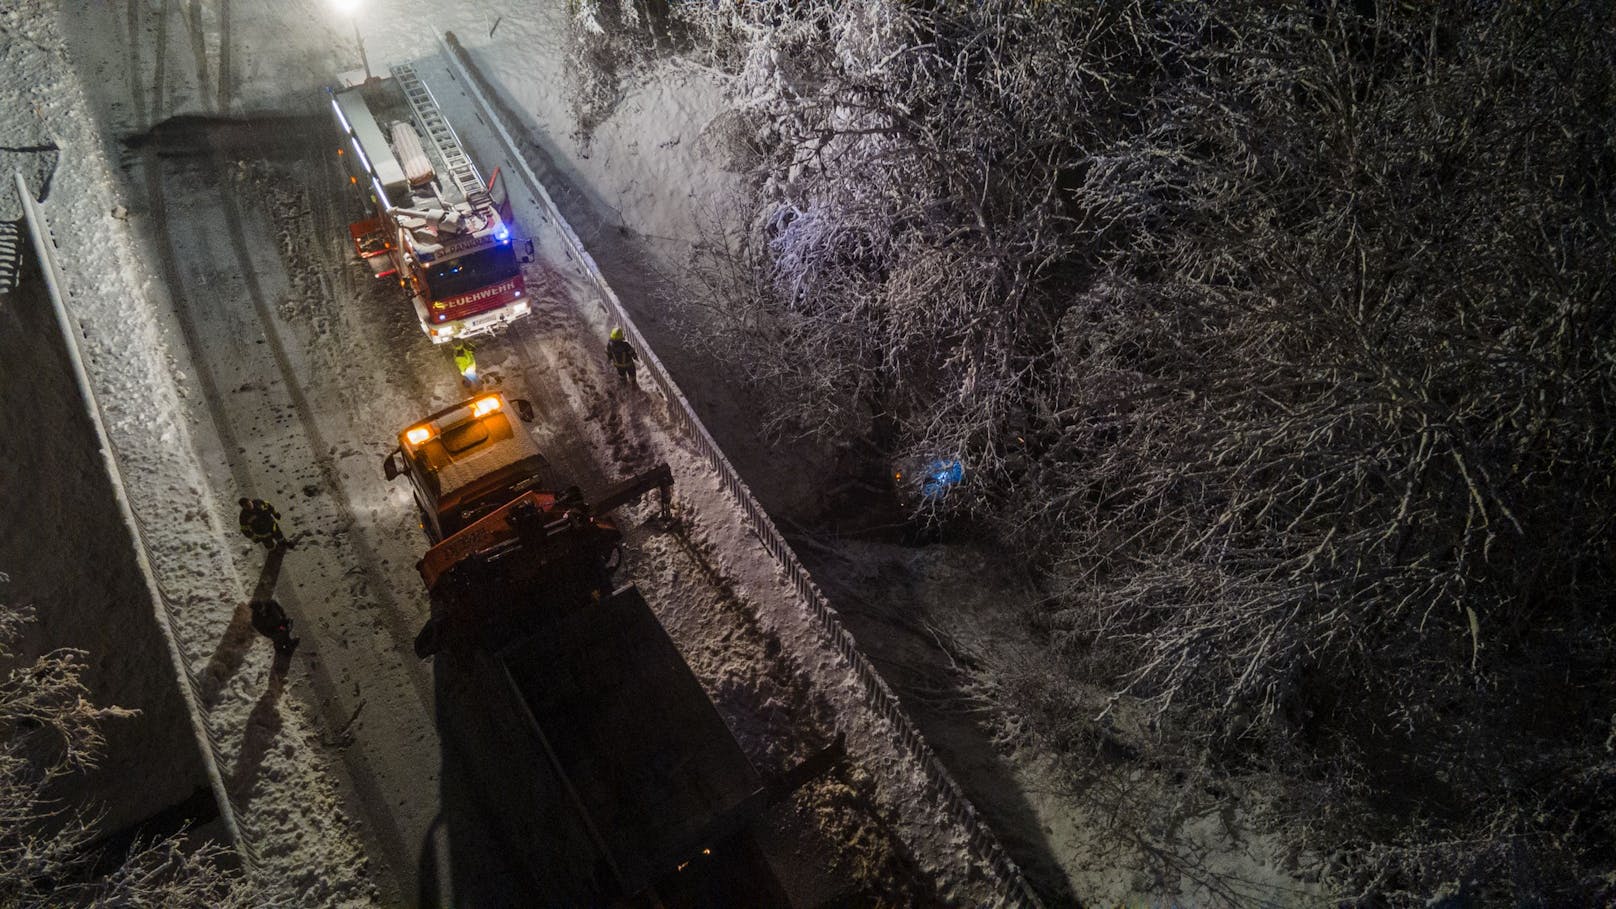 Ein aufmerksamer Schneepflug-Fahrer entdeckte am 25. November in St. Pankraz (OÖ) Reifenspuren, die von der tiefwinterlichen Fahrbahn ins Nichts führten. Ein 34-jähriger Verunglückter verdankt ihm seine Rettung.